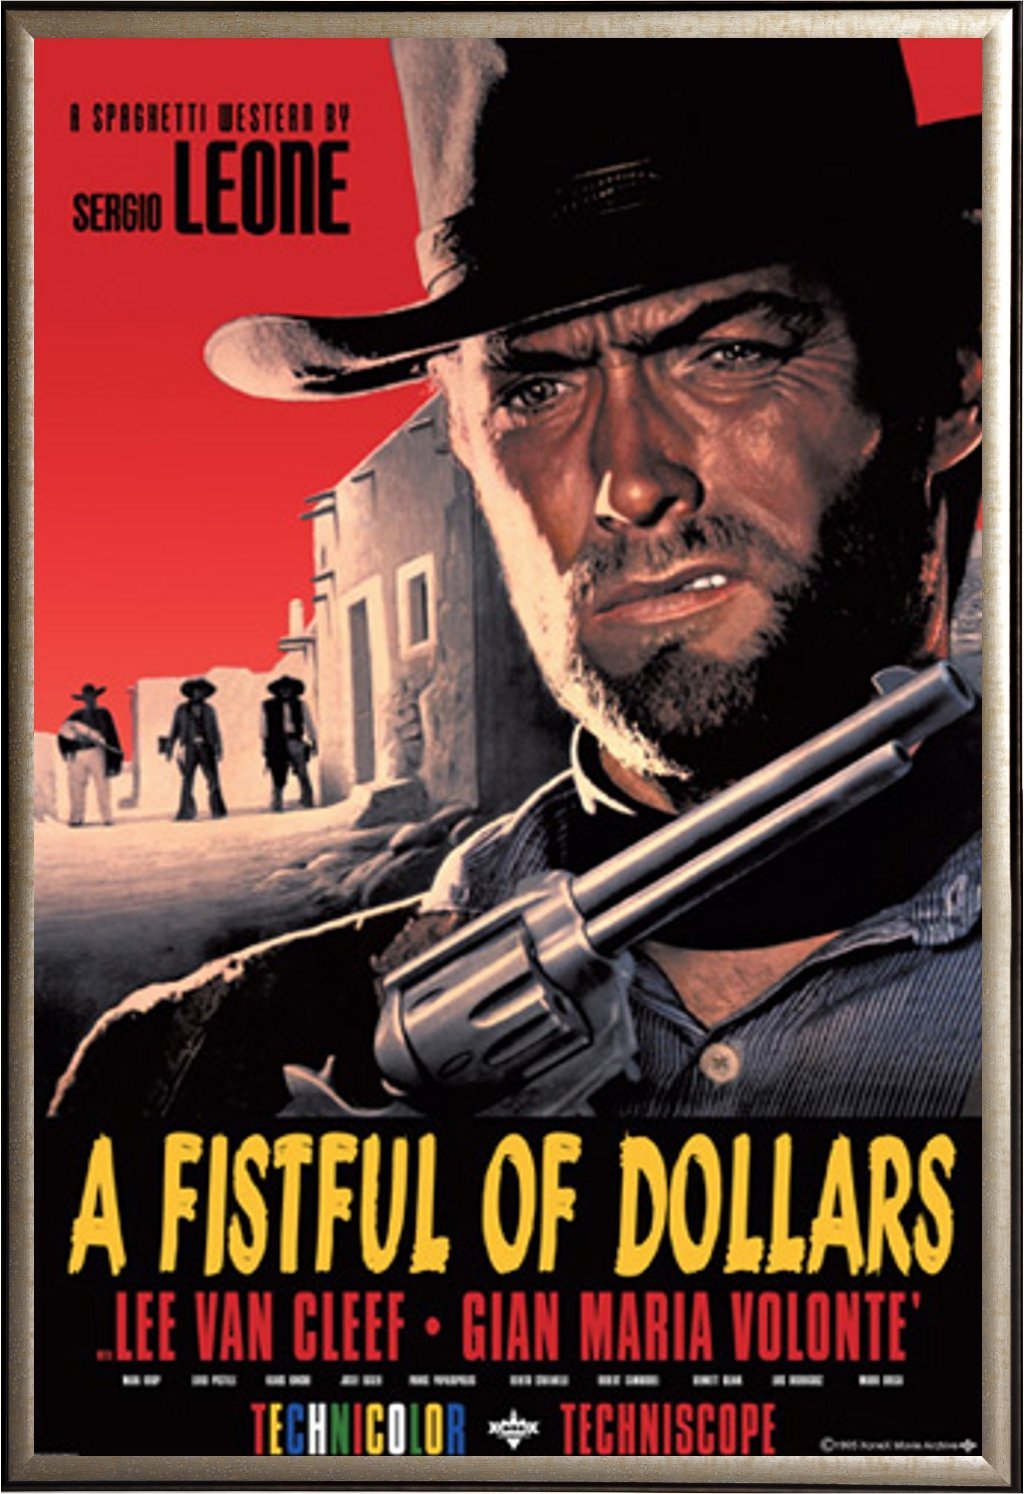 荒野大镖客 蓝光原盘下载+高清MKV版/独行侠连环夺命枪 1964 A Fistful of Dollars 37.79G